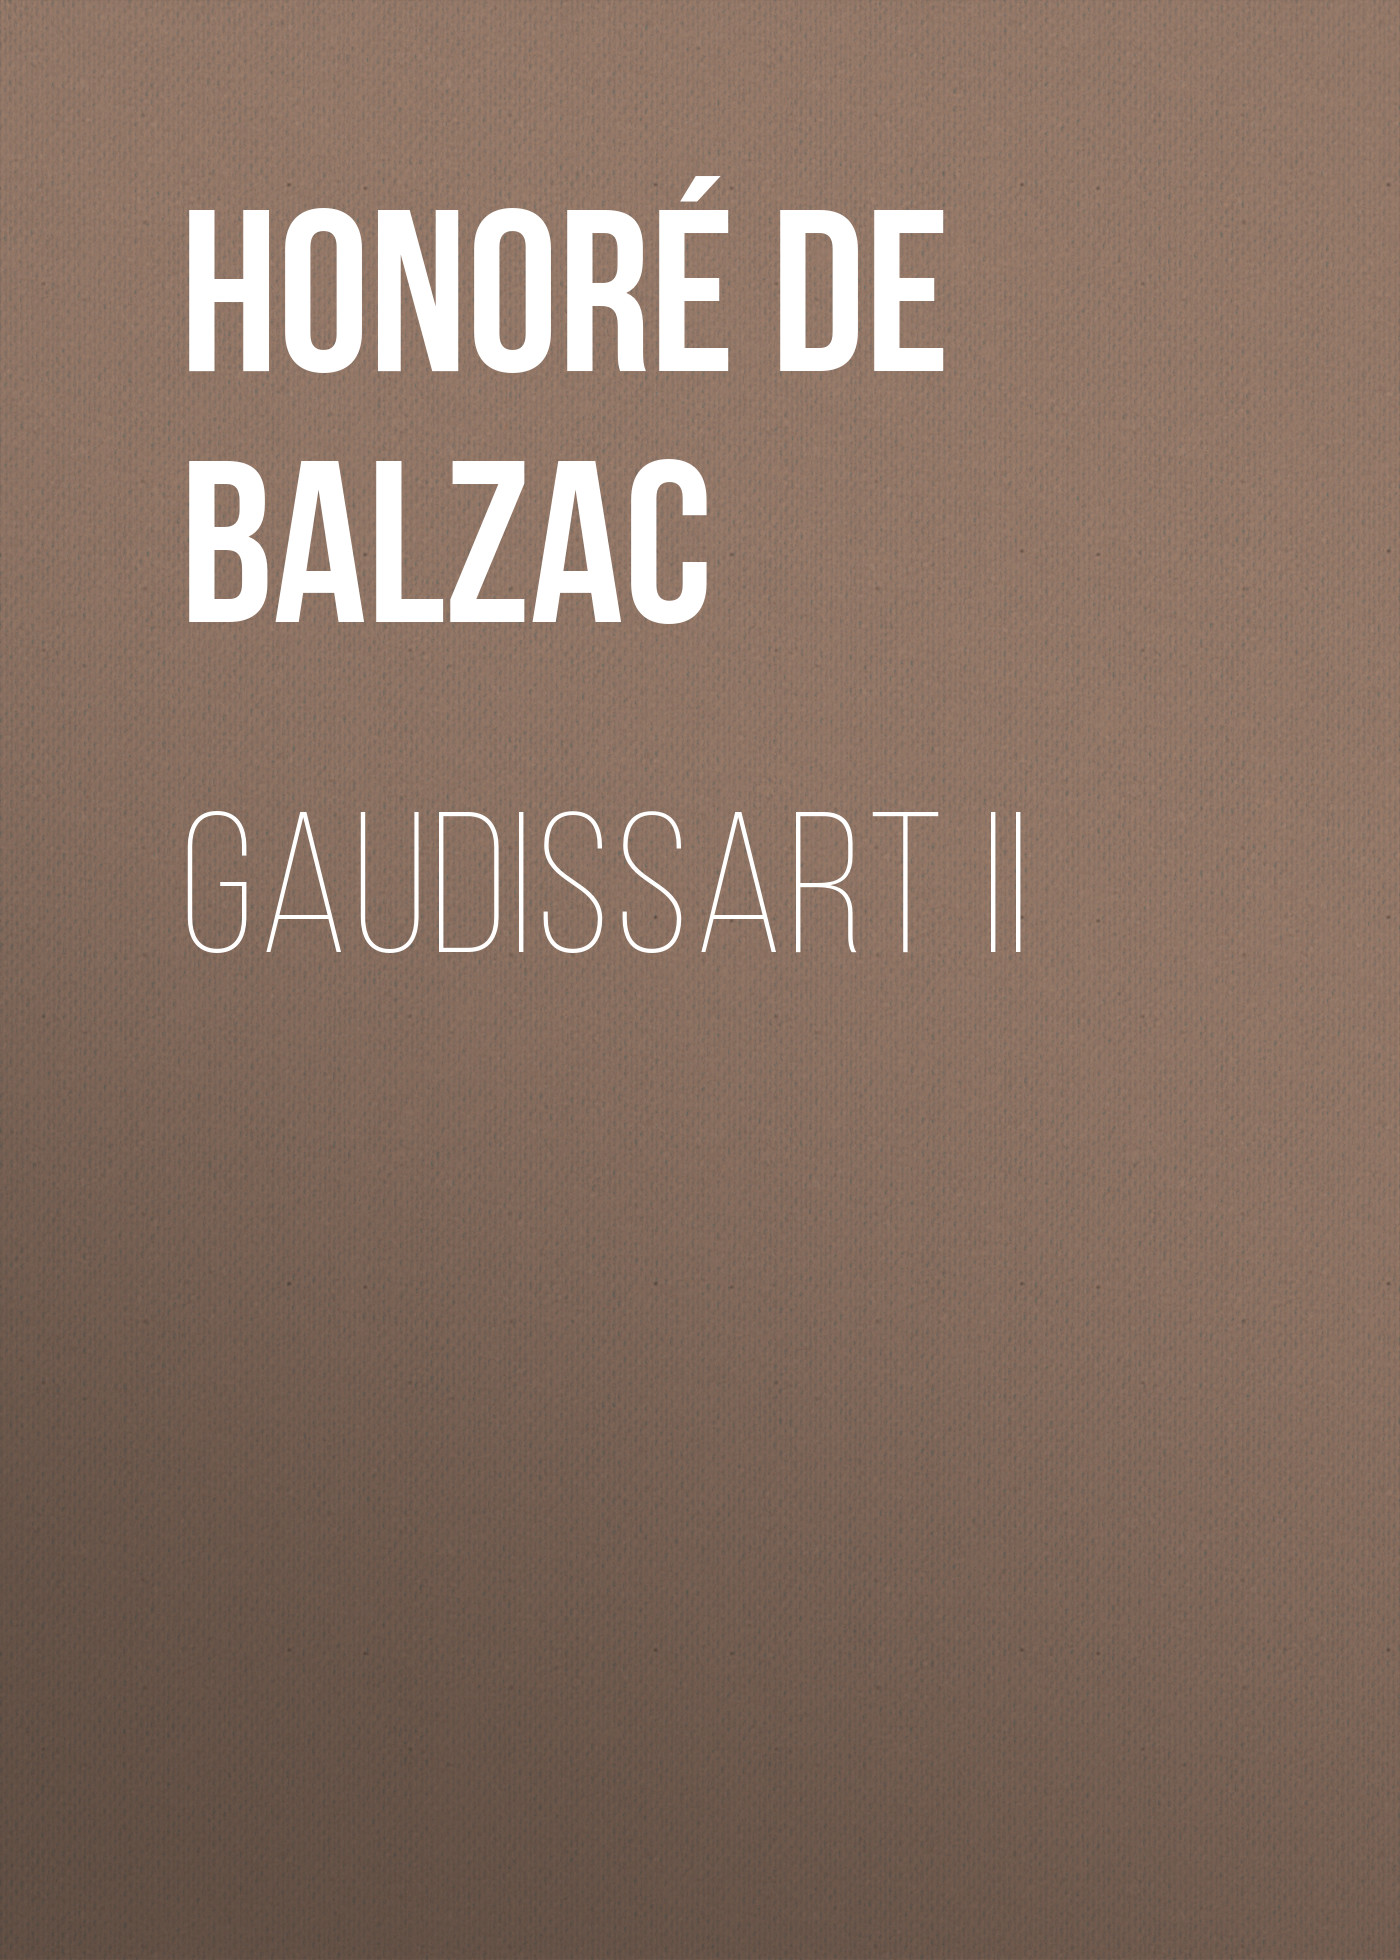 Книга Gaudissart II из серии , созданная Honoré Balzac, может относится к жанру Литература 19 века, Зарубежная старинная литература, Зарубежная классика. Стоимость электронной книги Gaudissart II с идентификатором 25020835 составляет 0 руб.